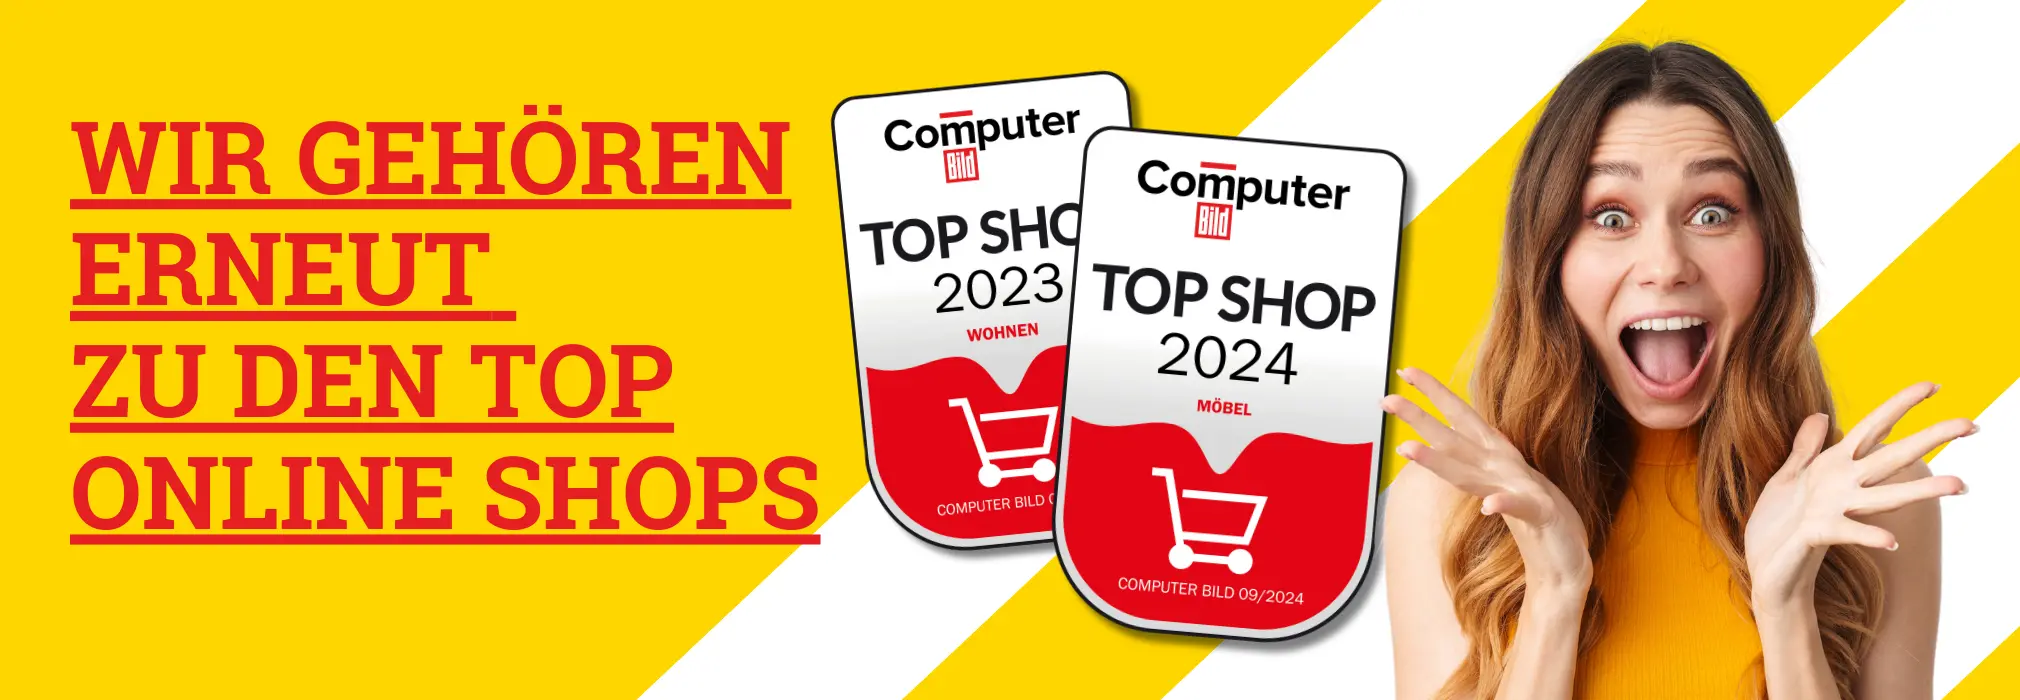 Top Shop 2023 & 2024